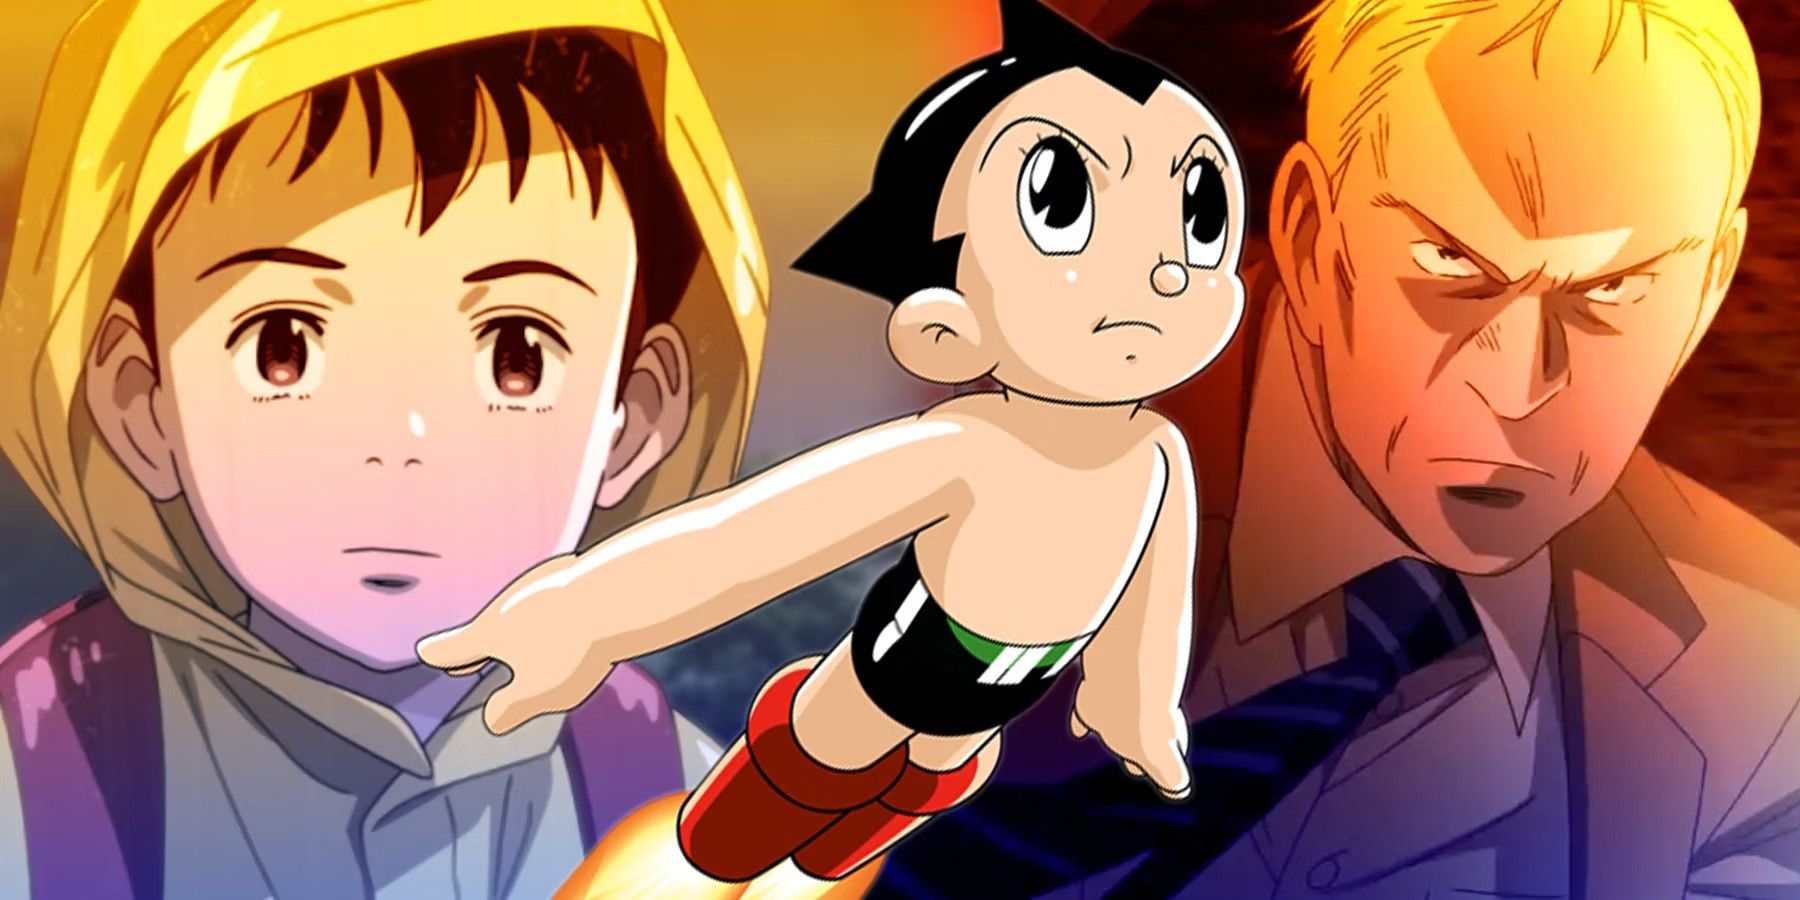 Sony Merges Anime Franchises Under Crunchyroll Brand - BNN Bloomberg